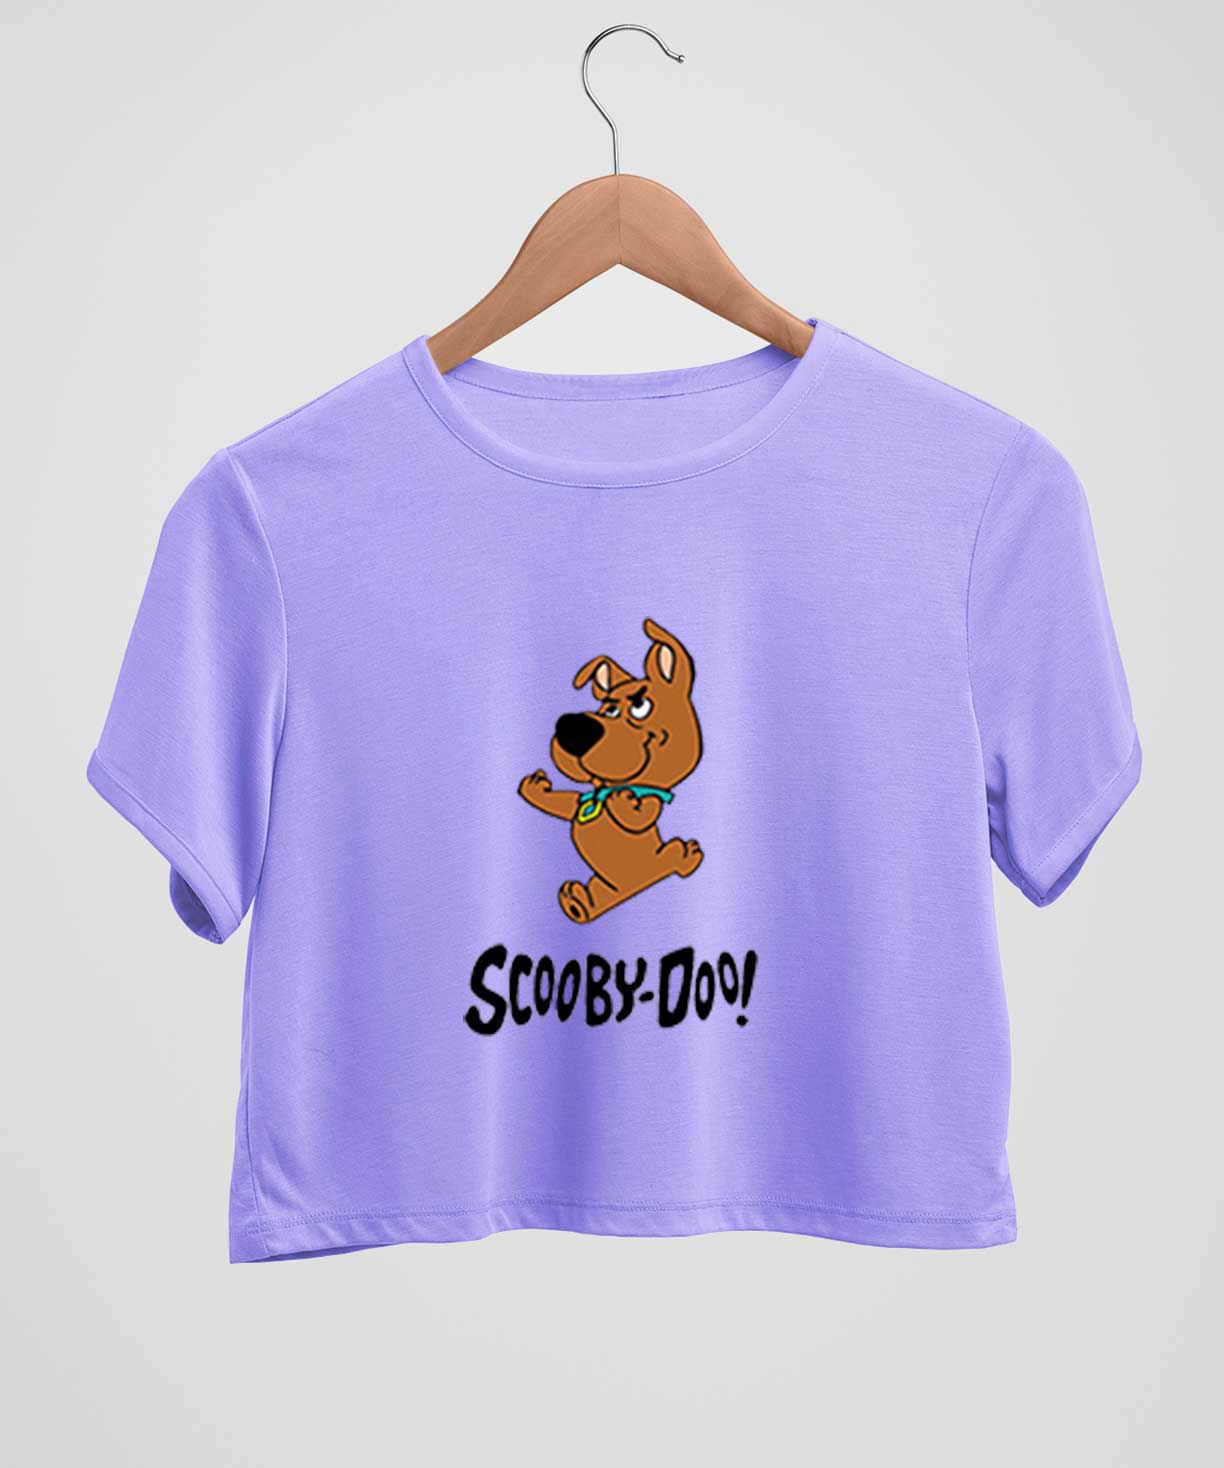 Scooby doo - Light Purple - Comfort Fit Crop top